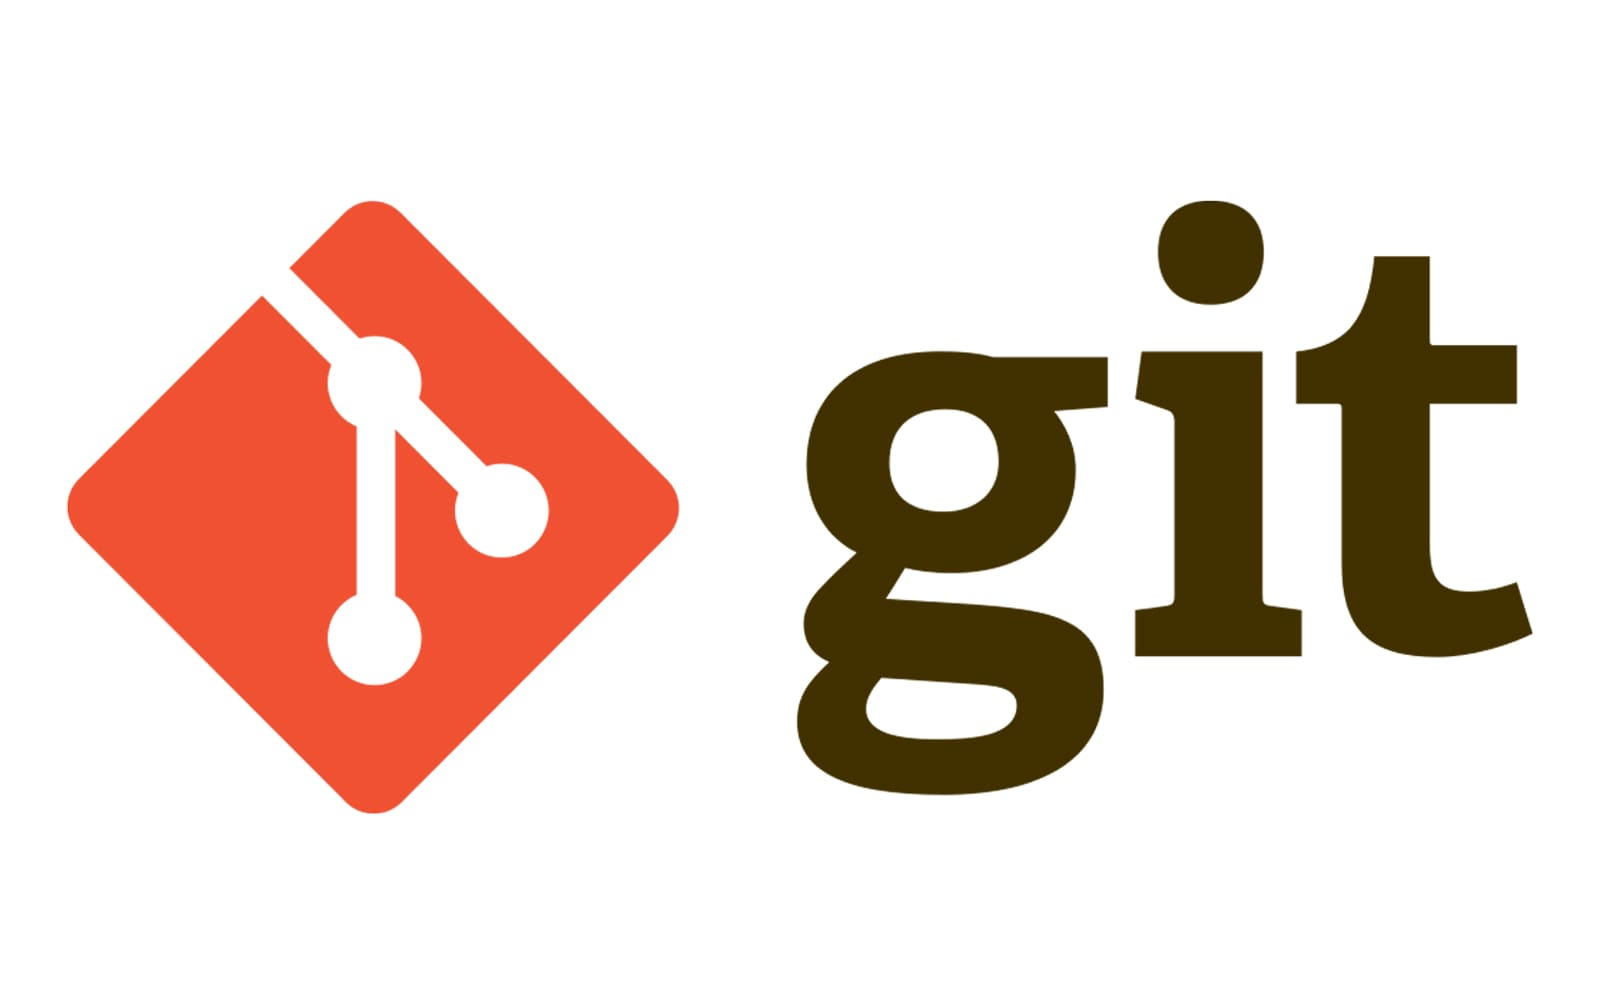 DevOps solution & tool - Git